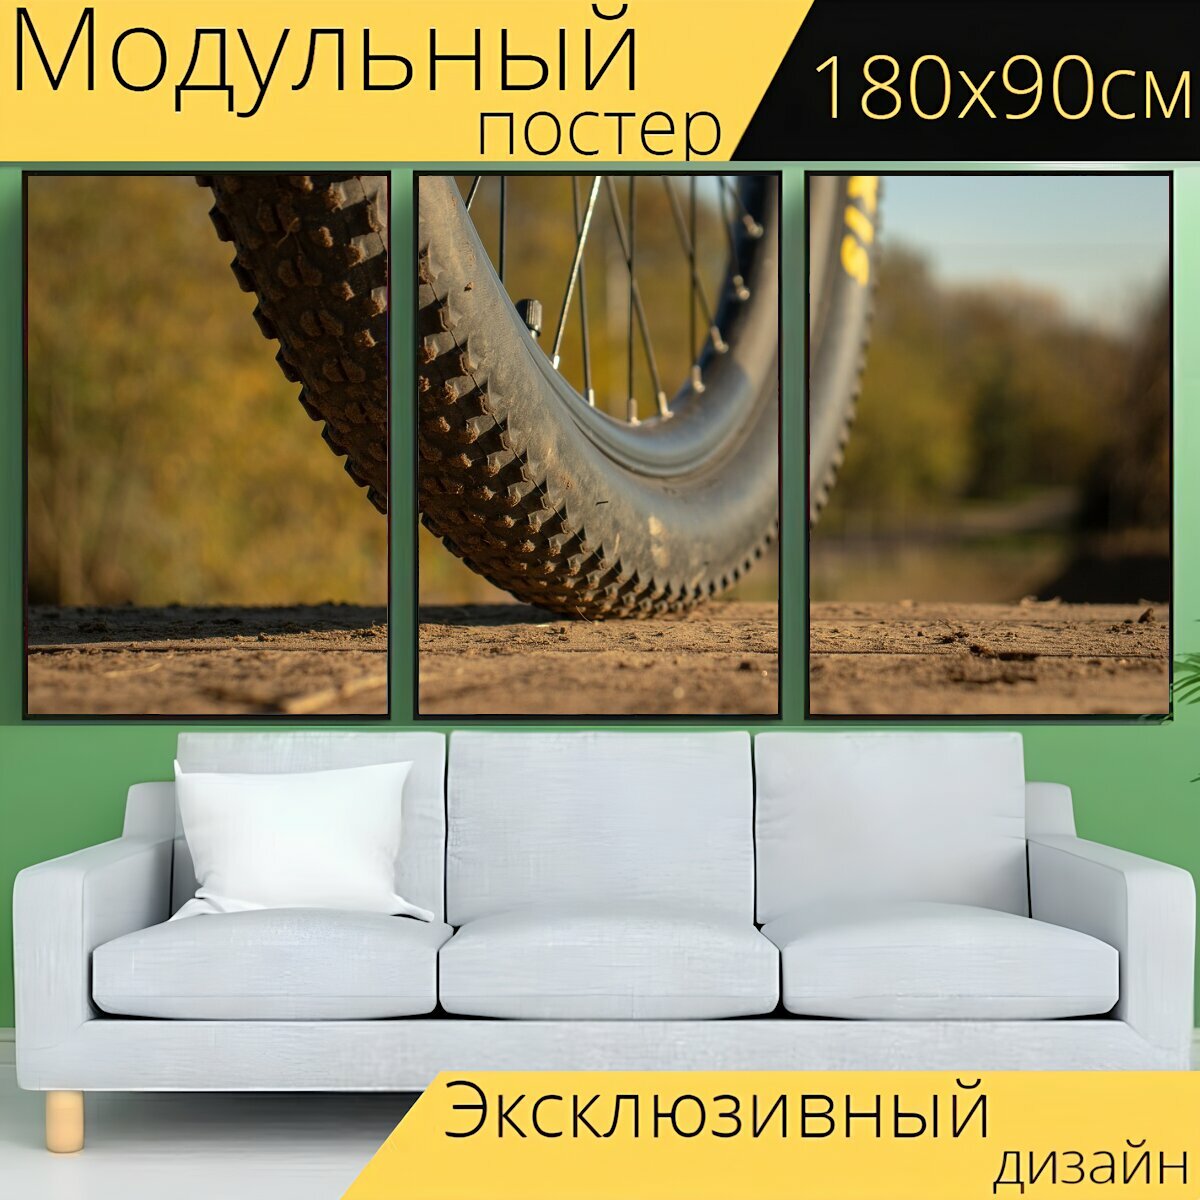 Модульный постер "Колесо, велосипед, шина" 180 x 90 см. для интерьера